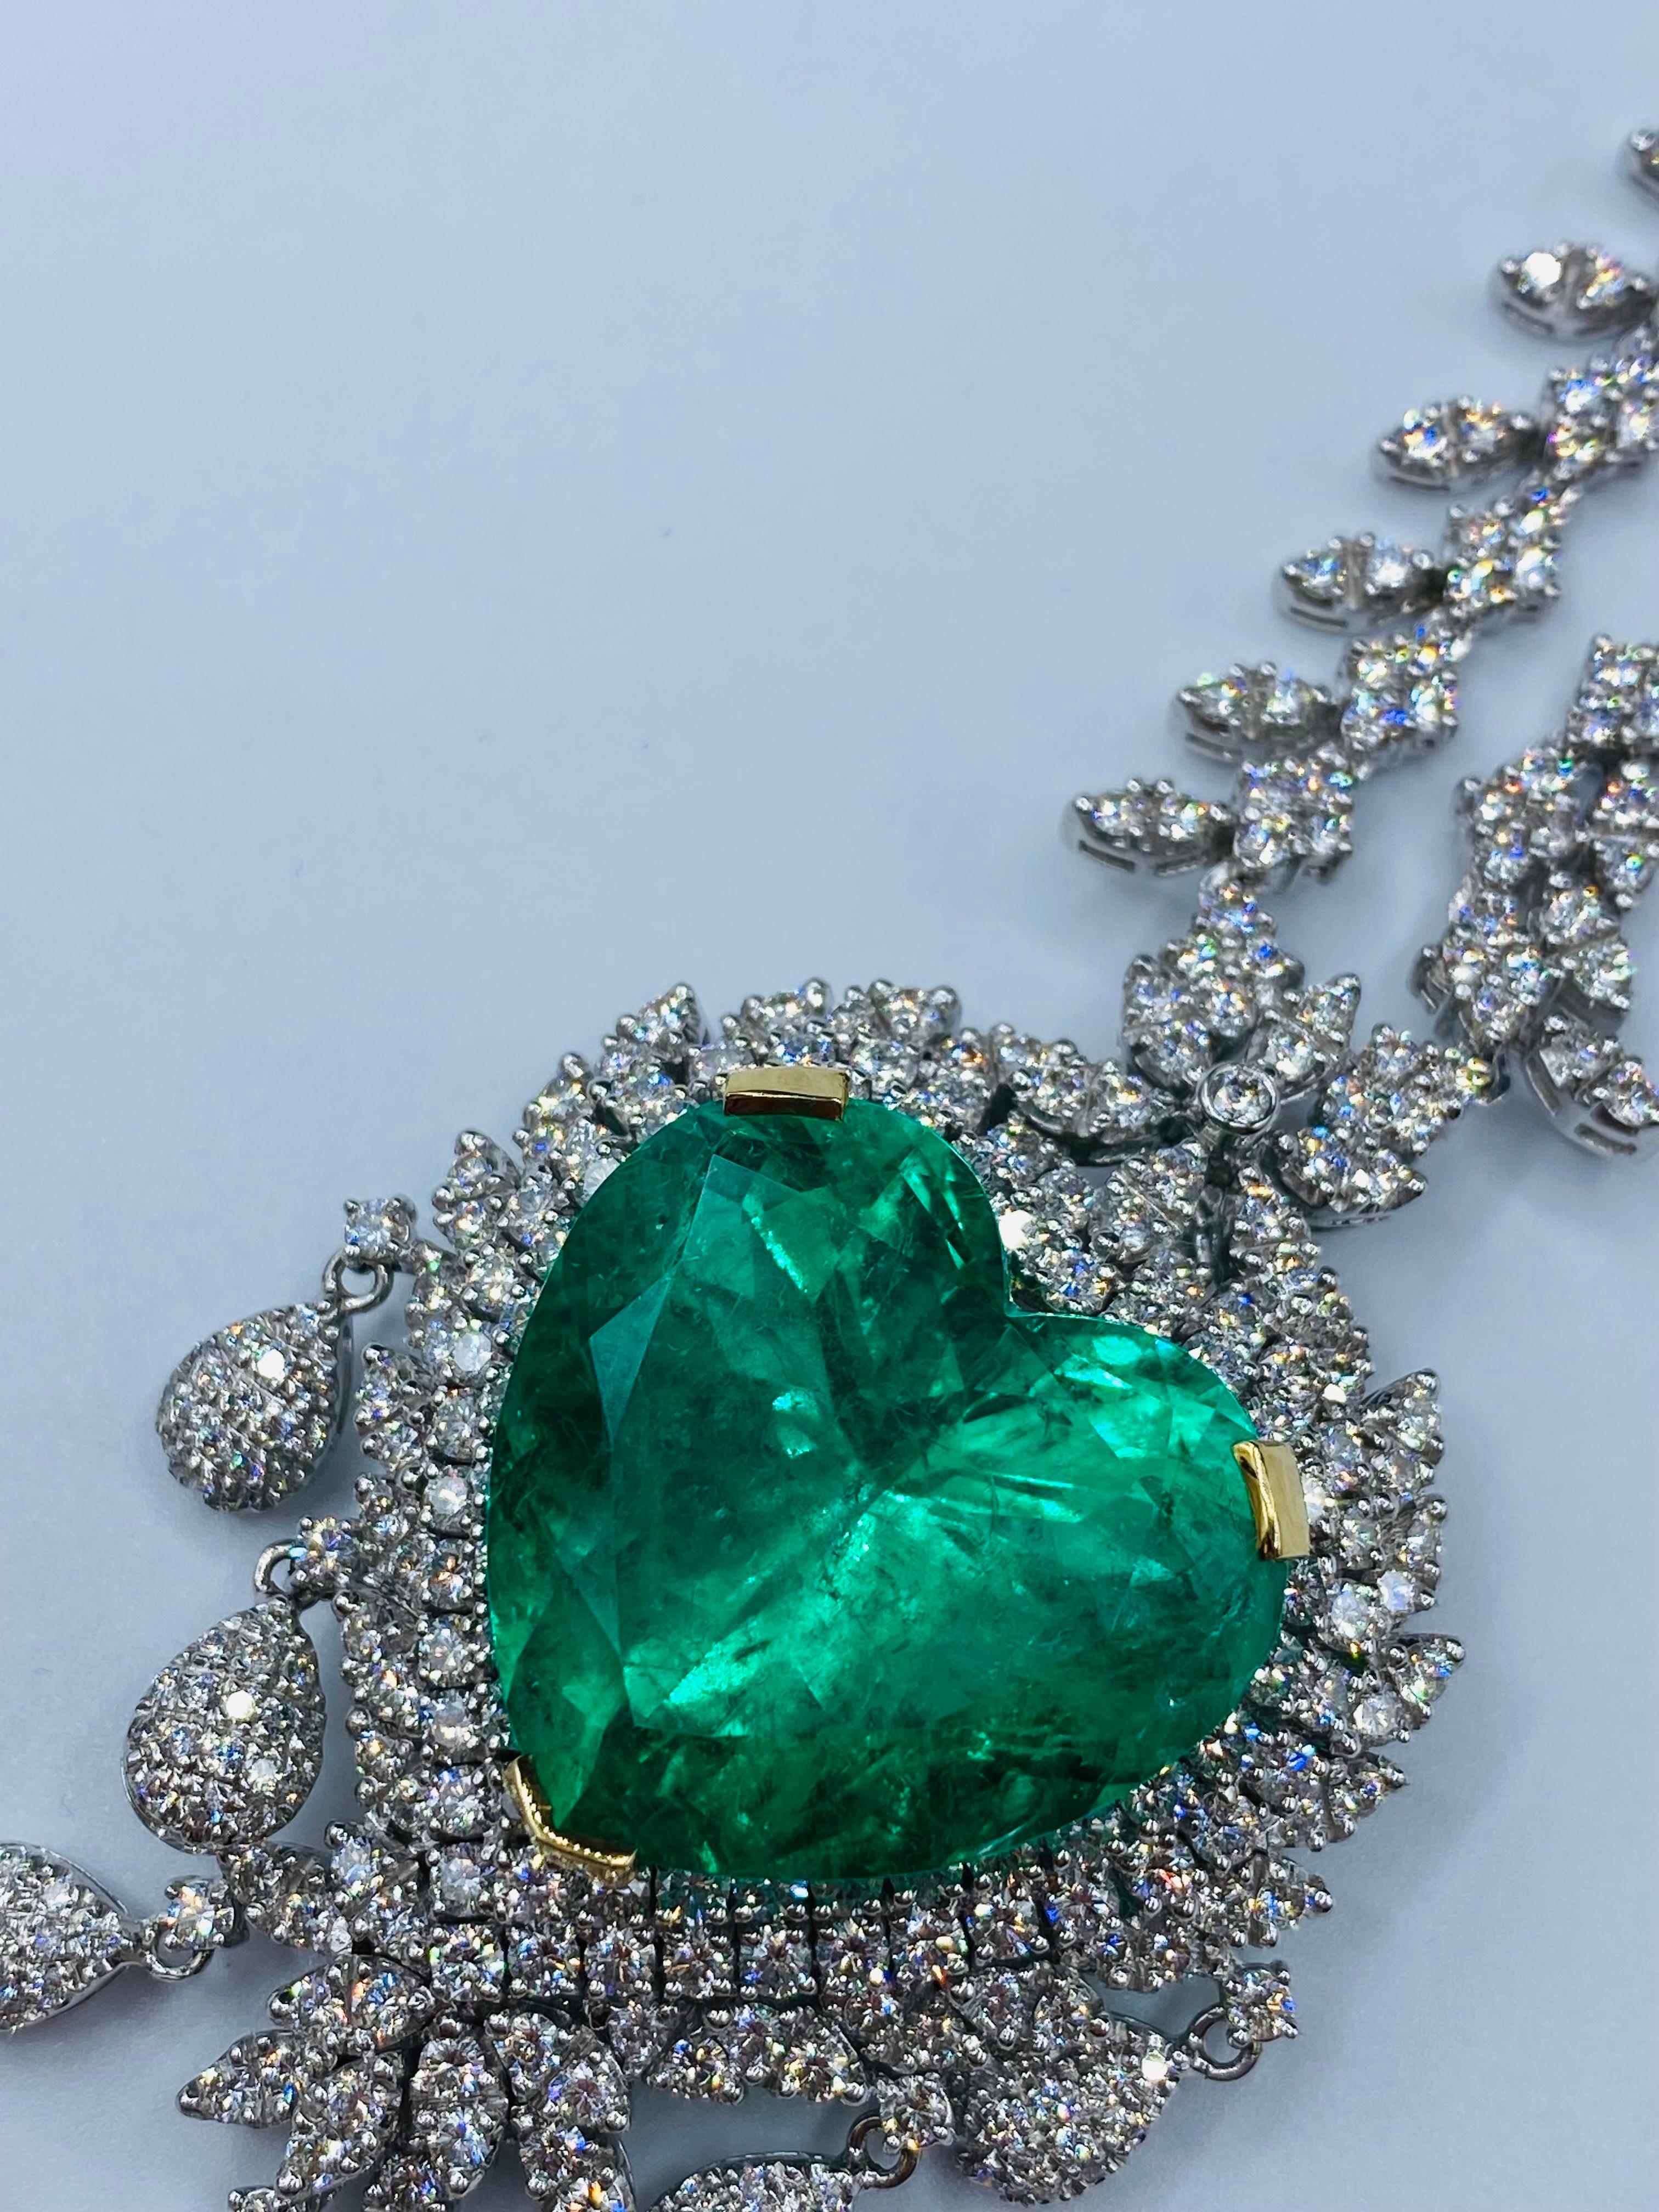 Von Emilio Jewelry, einem bekannten und angesehenen Großhändler mit Sitz auf der berühmten Fifth Avenue in New York,
Kolumbianische Smaragde dieser Qualität sind schwer zu bekommen, vor allem in einer Herzform von dieser Qualität und Größe! Im